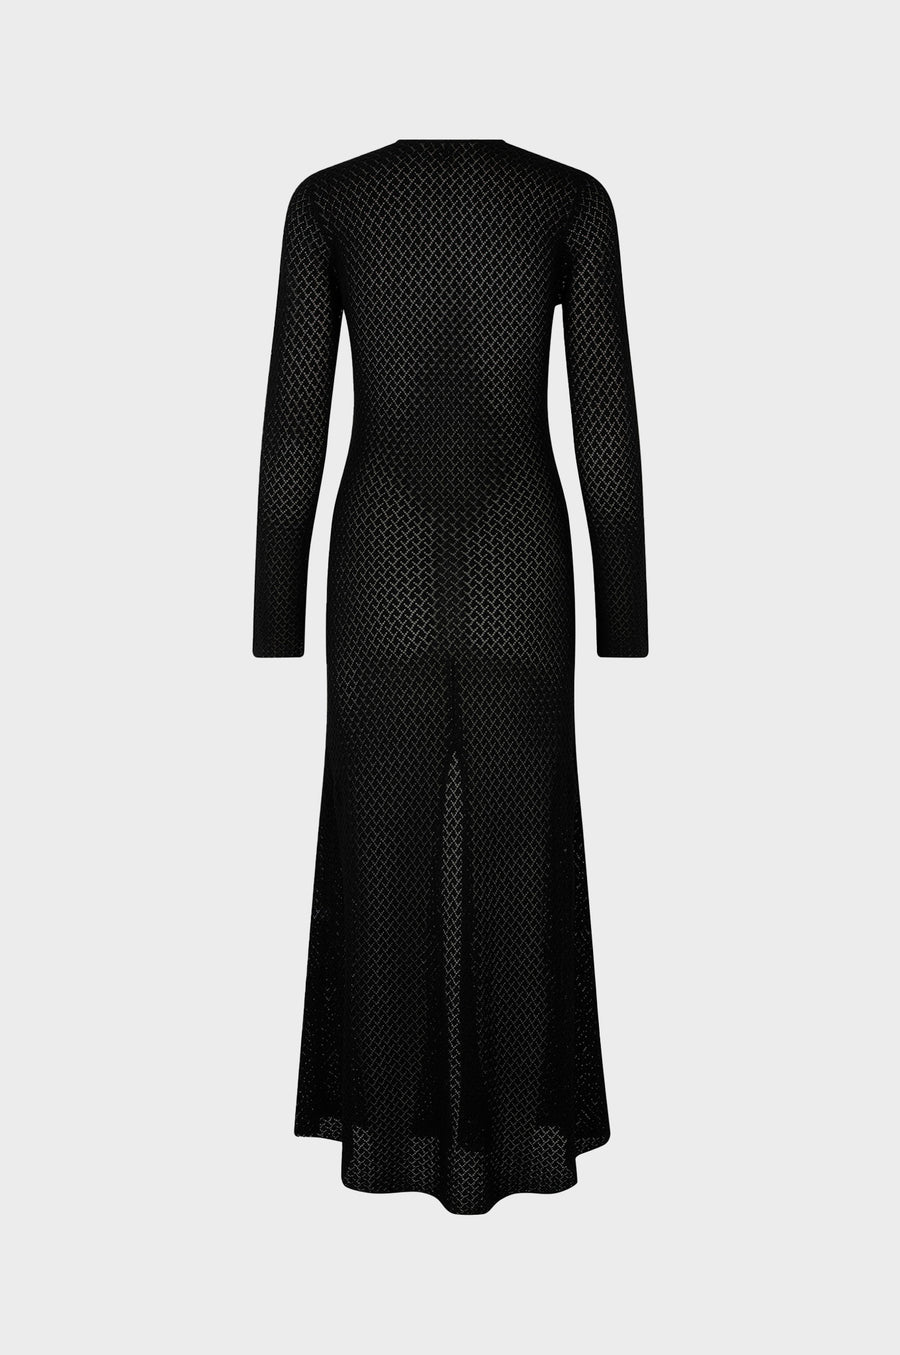 The Garment - Tanzania Dress  - Black